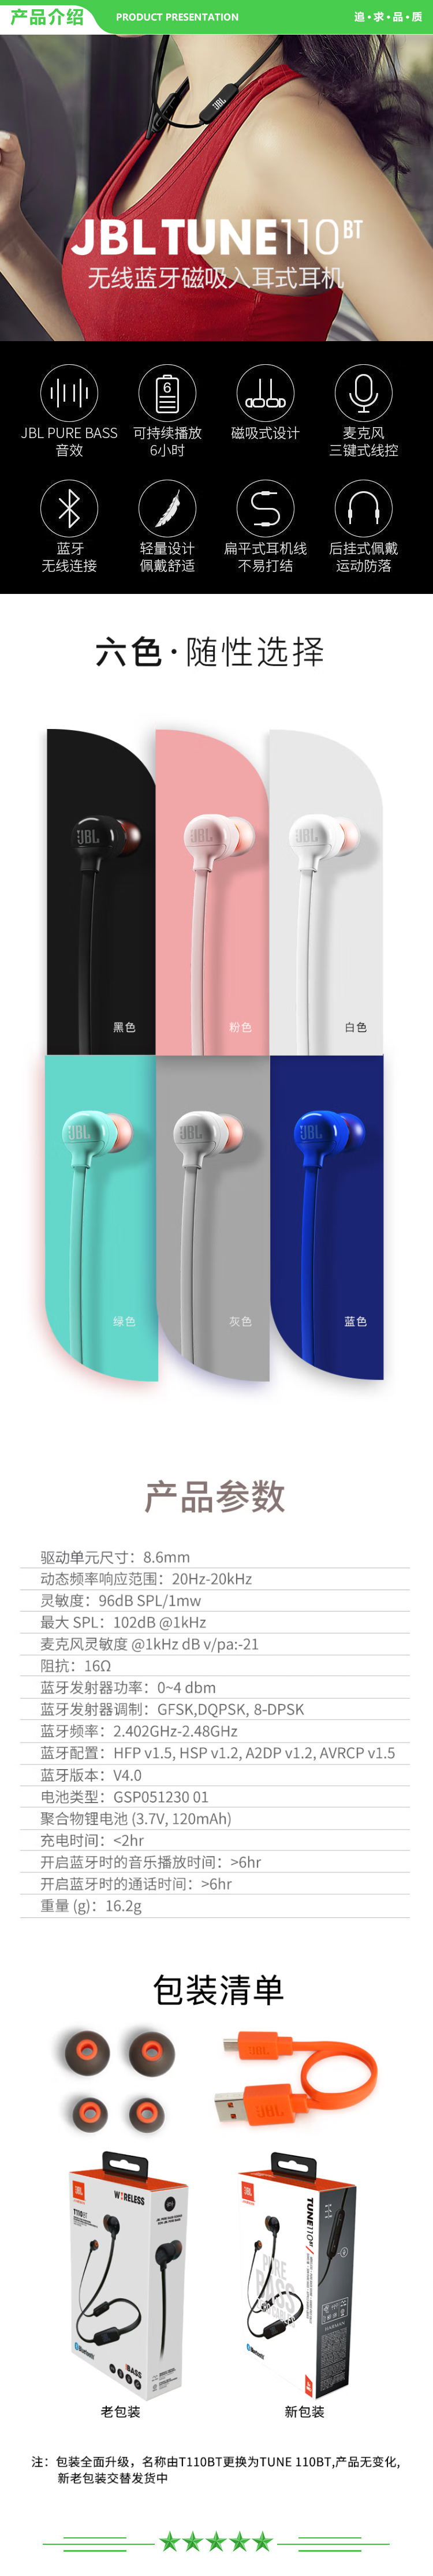 JBL TUNE 110BT 蓝牙无线耳机 运动音乐游戏耳机 苹果华为小米入耳式耳机 带麦可通话 绿色 .jpg